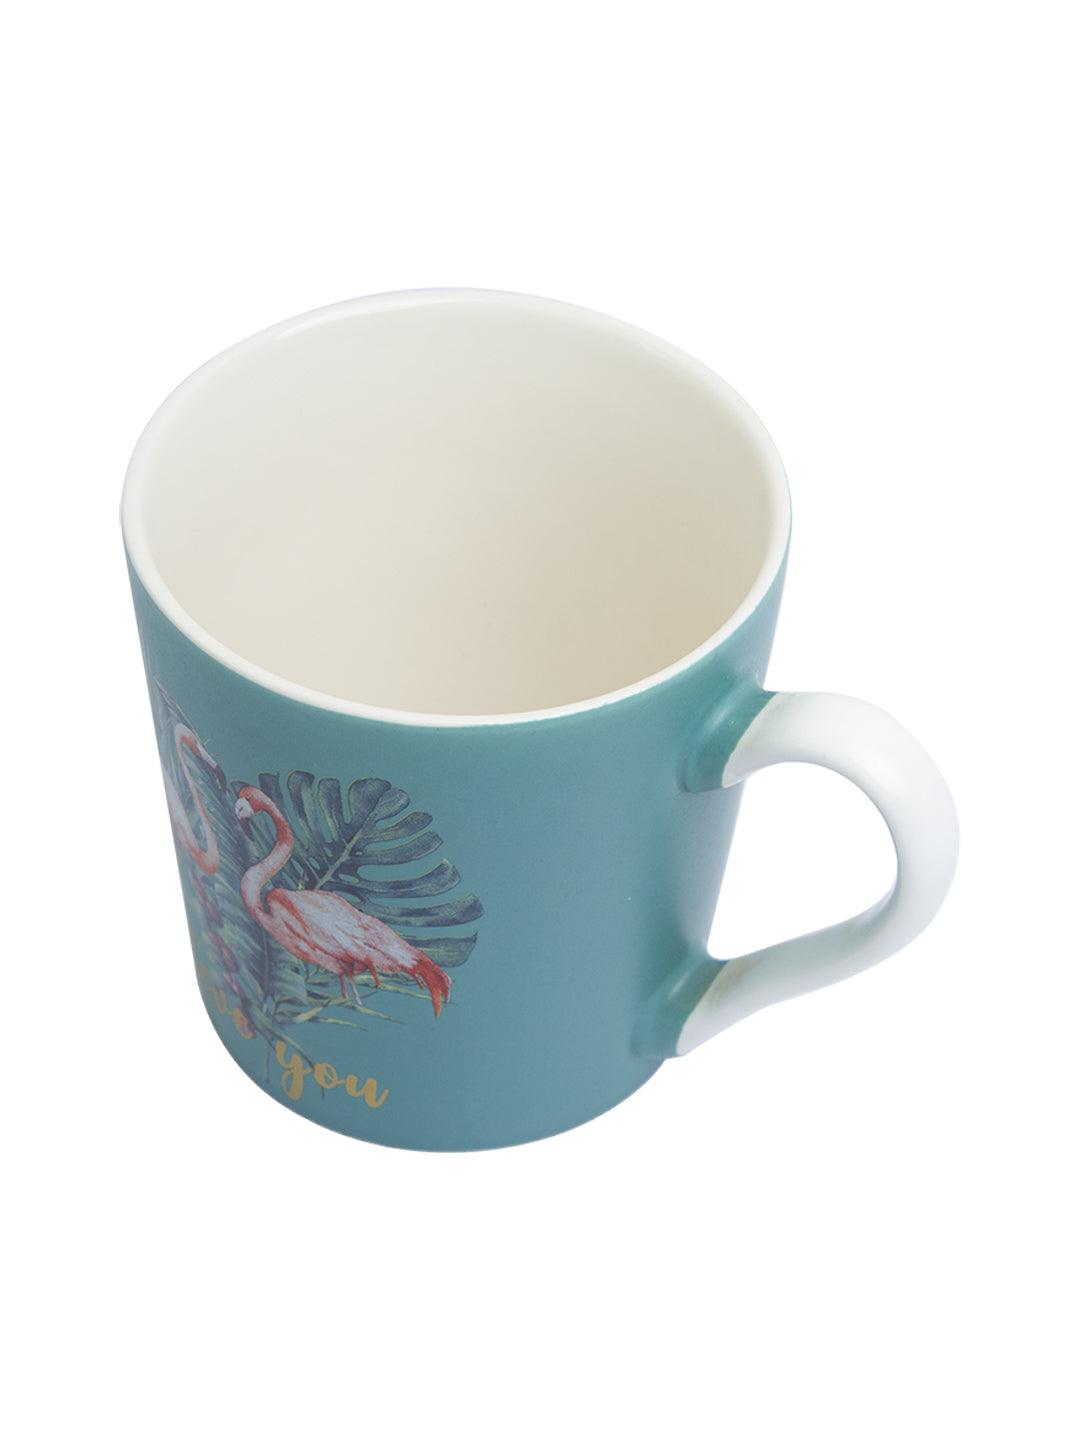 Flamingo Ceramic Mug - 400mL, Turquoise - MARKET 99